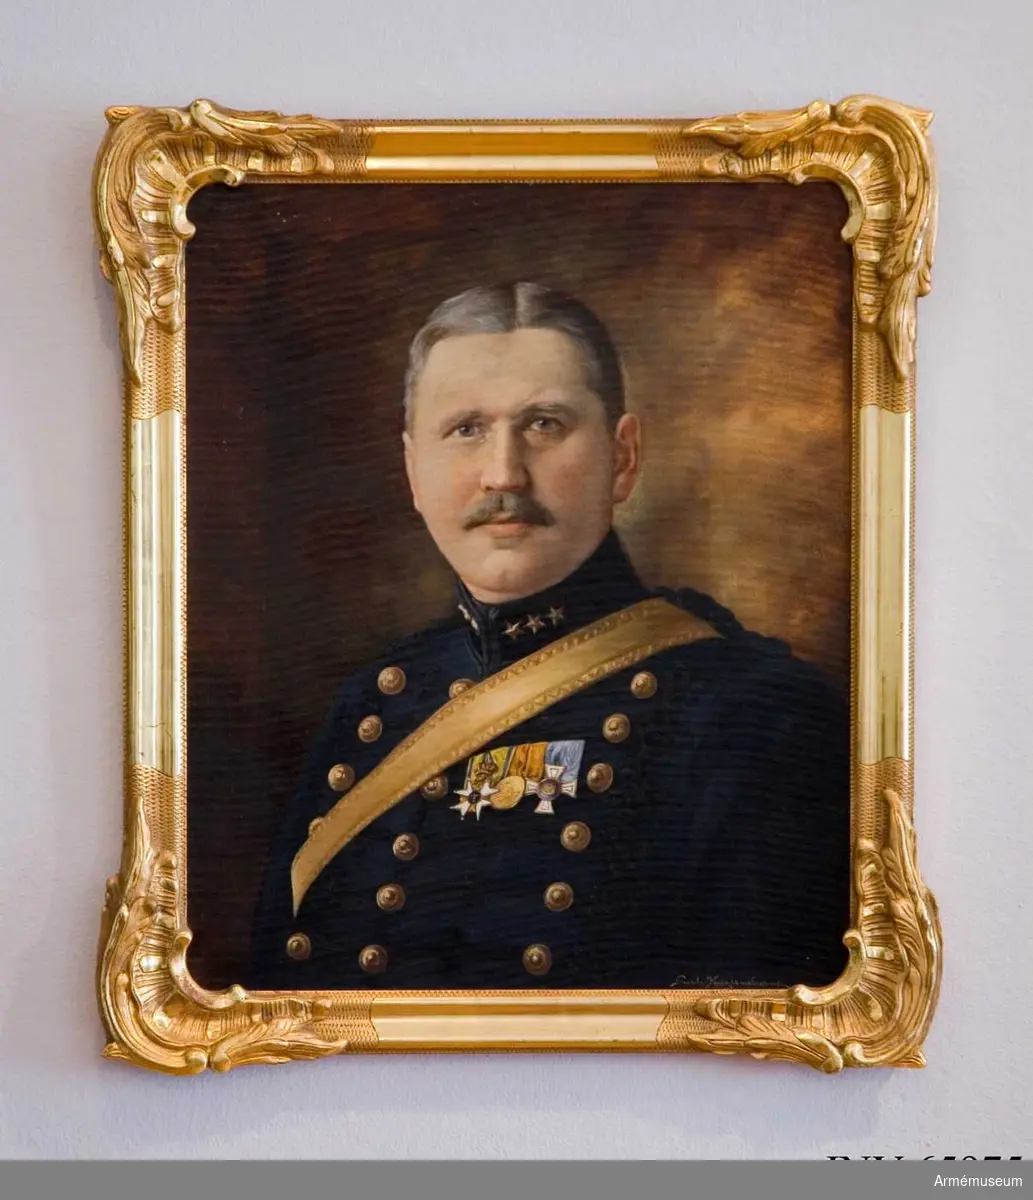 Grupp M I.
Målning signerad Gurli Kuylenstierna föreställande majoren Oswald Kuylenstierna (1865-1932). 
Samhörande guldram.